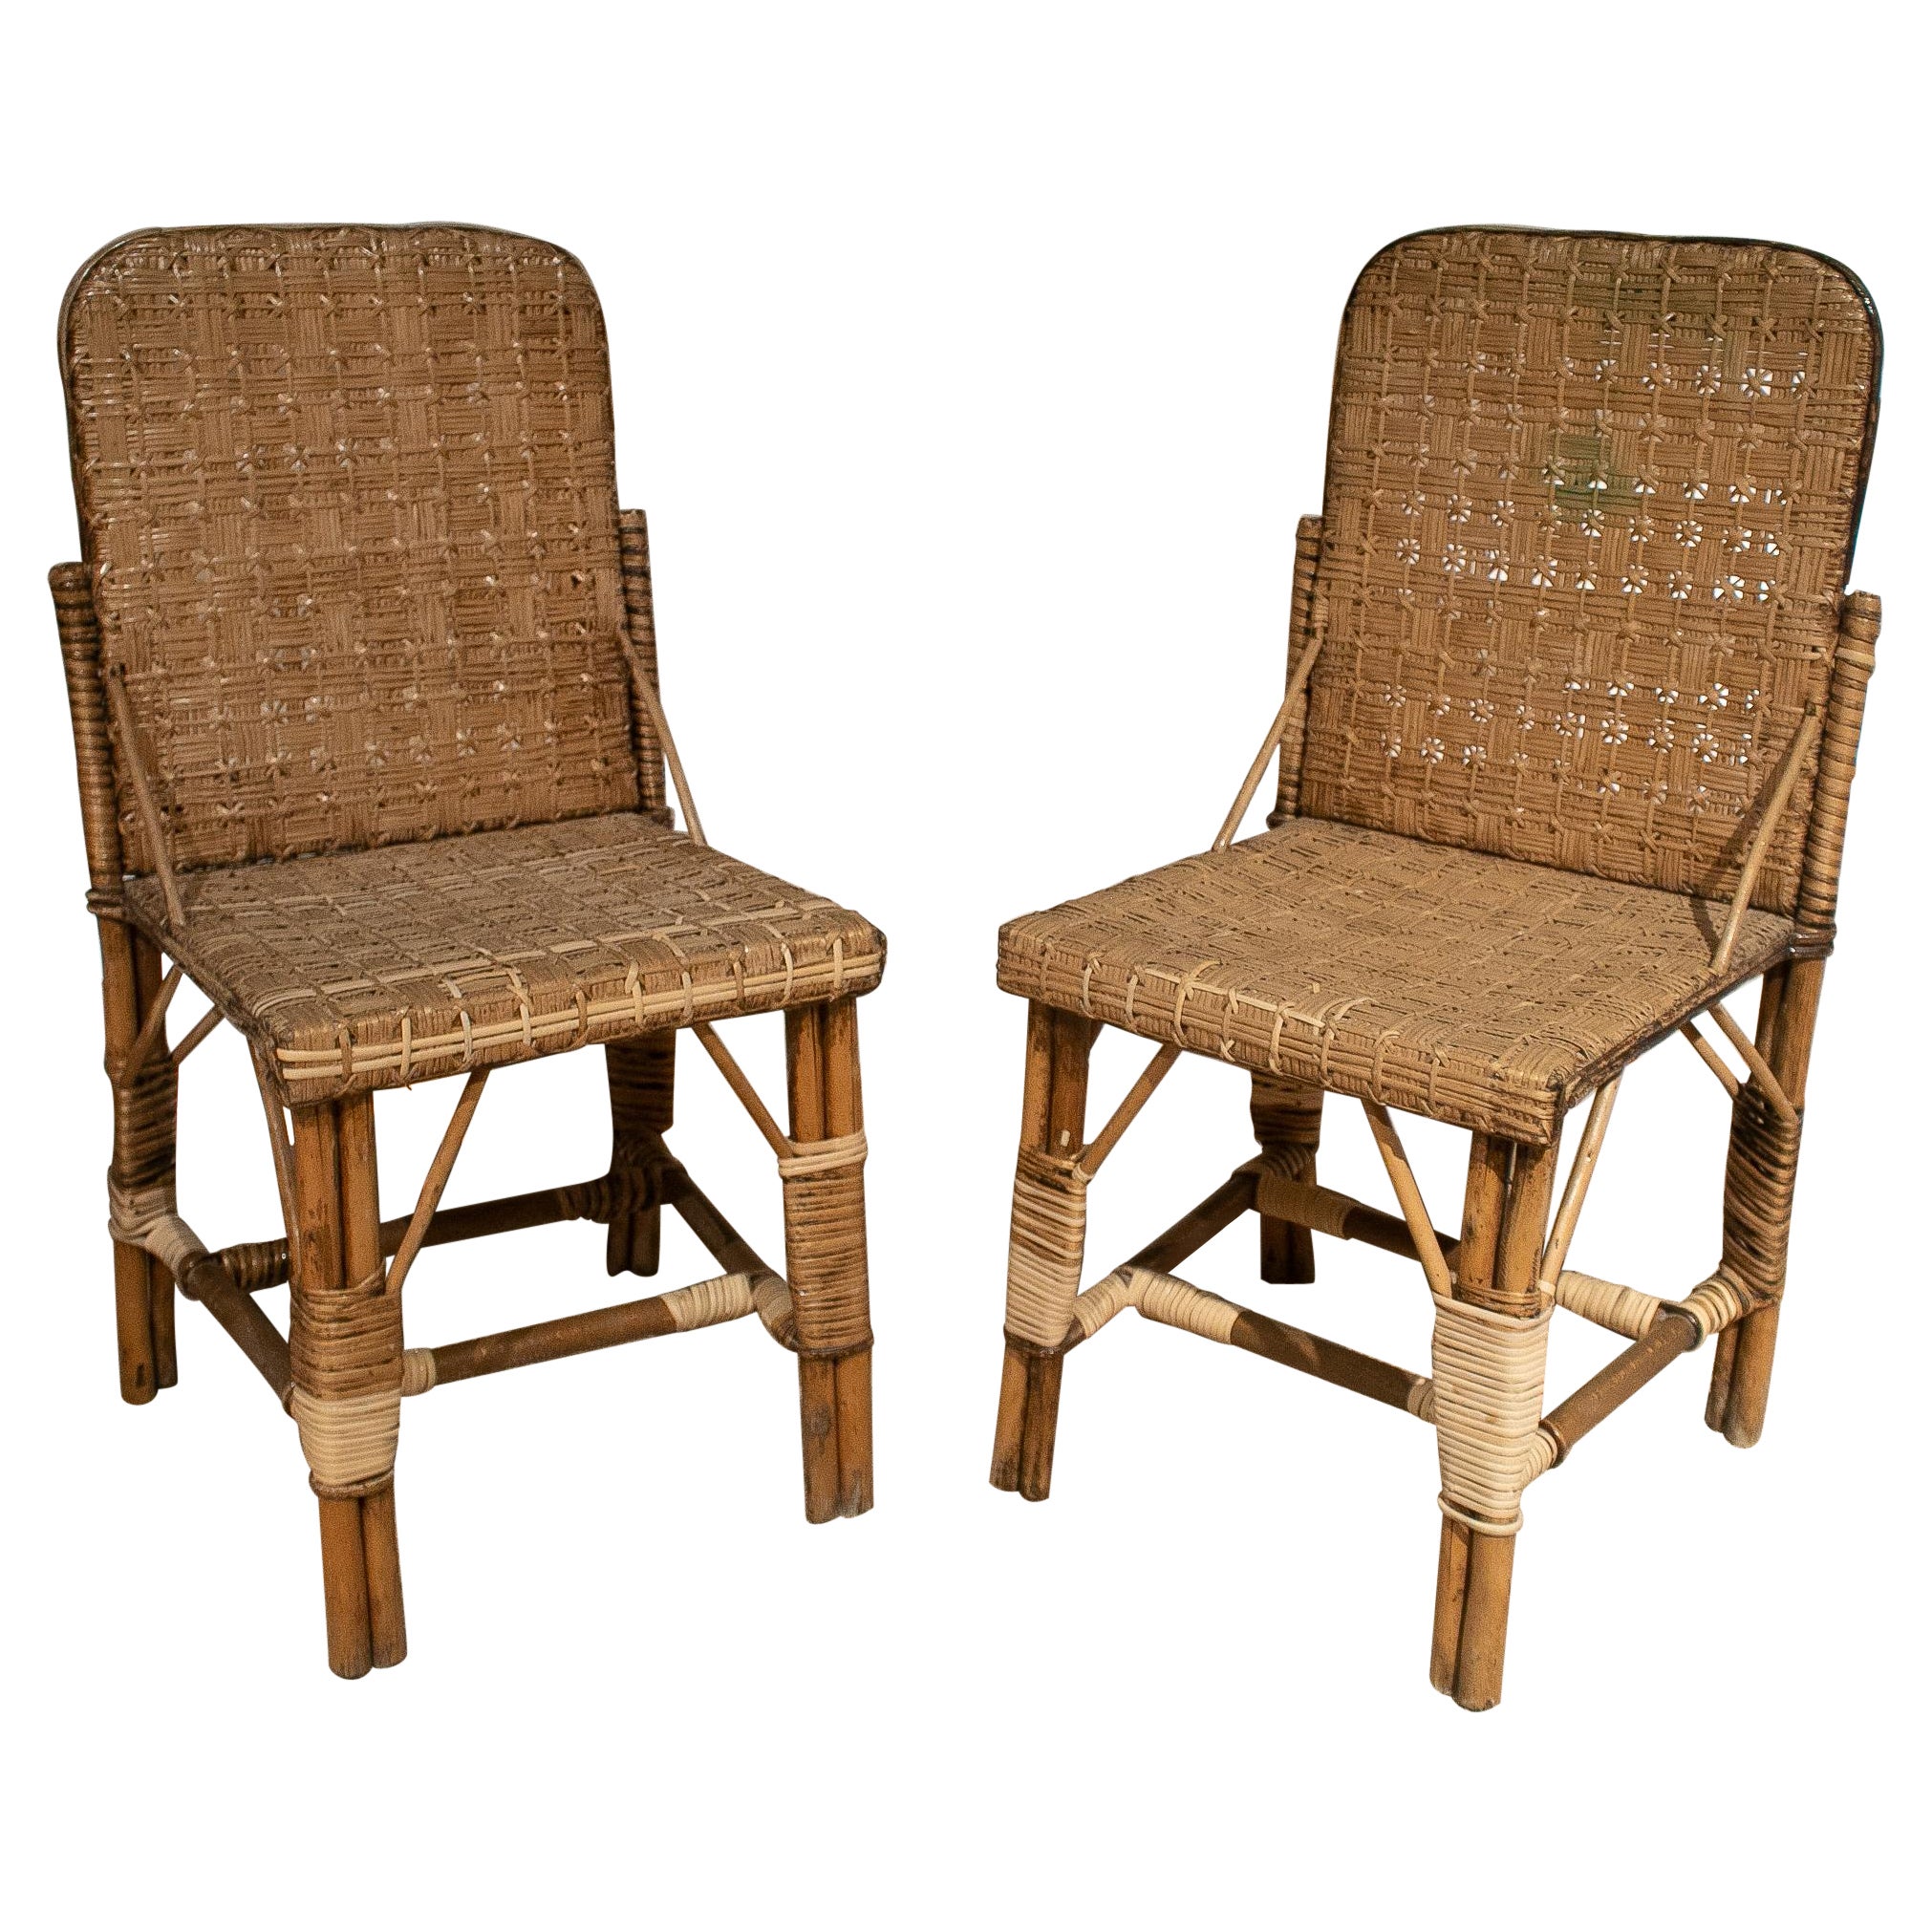 Paire de chaises espagnoles des années 1950 en osier tissé à la main sur bois